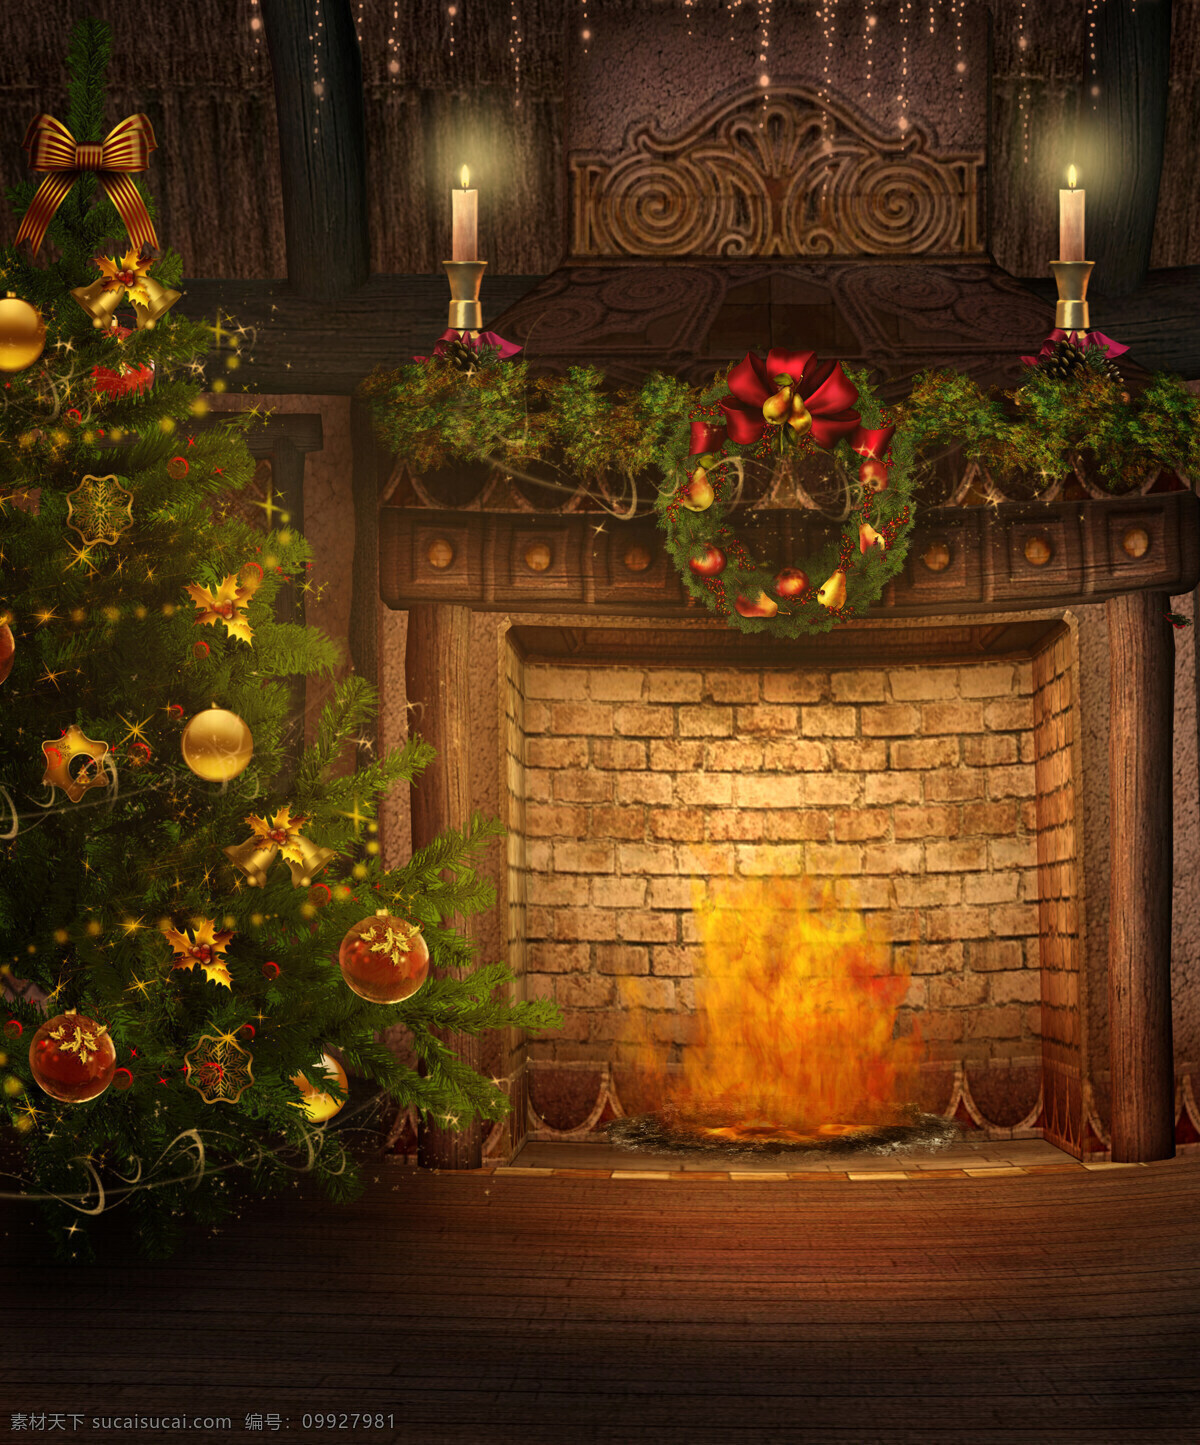 圣诞 壁炉 火焰 蜡烛 烛台 烛火 花环 圣诞树 篝火 圣诞花环 圣诞背景 圣诞节 圣诞快乐 节日庆祝 文化艺术